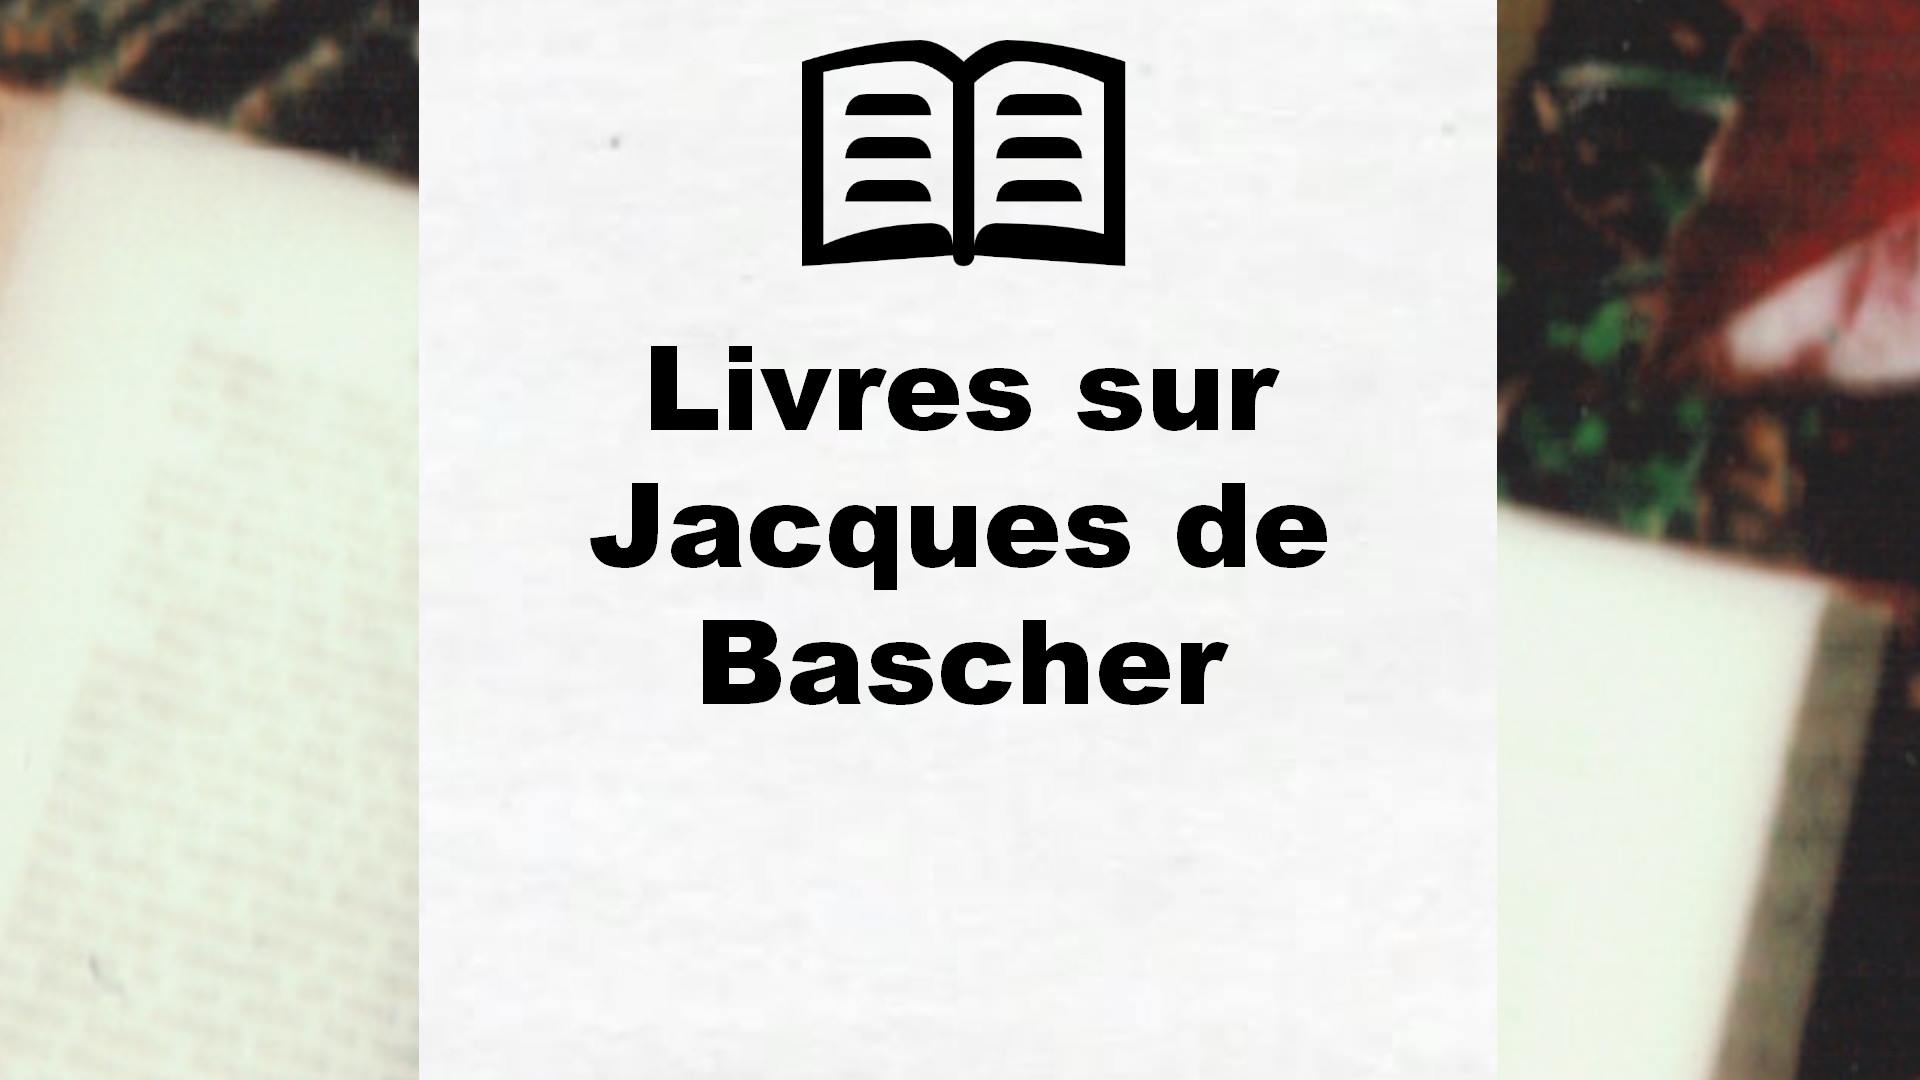 Livres sur Jacques de Bascher